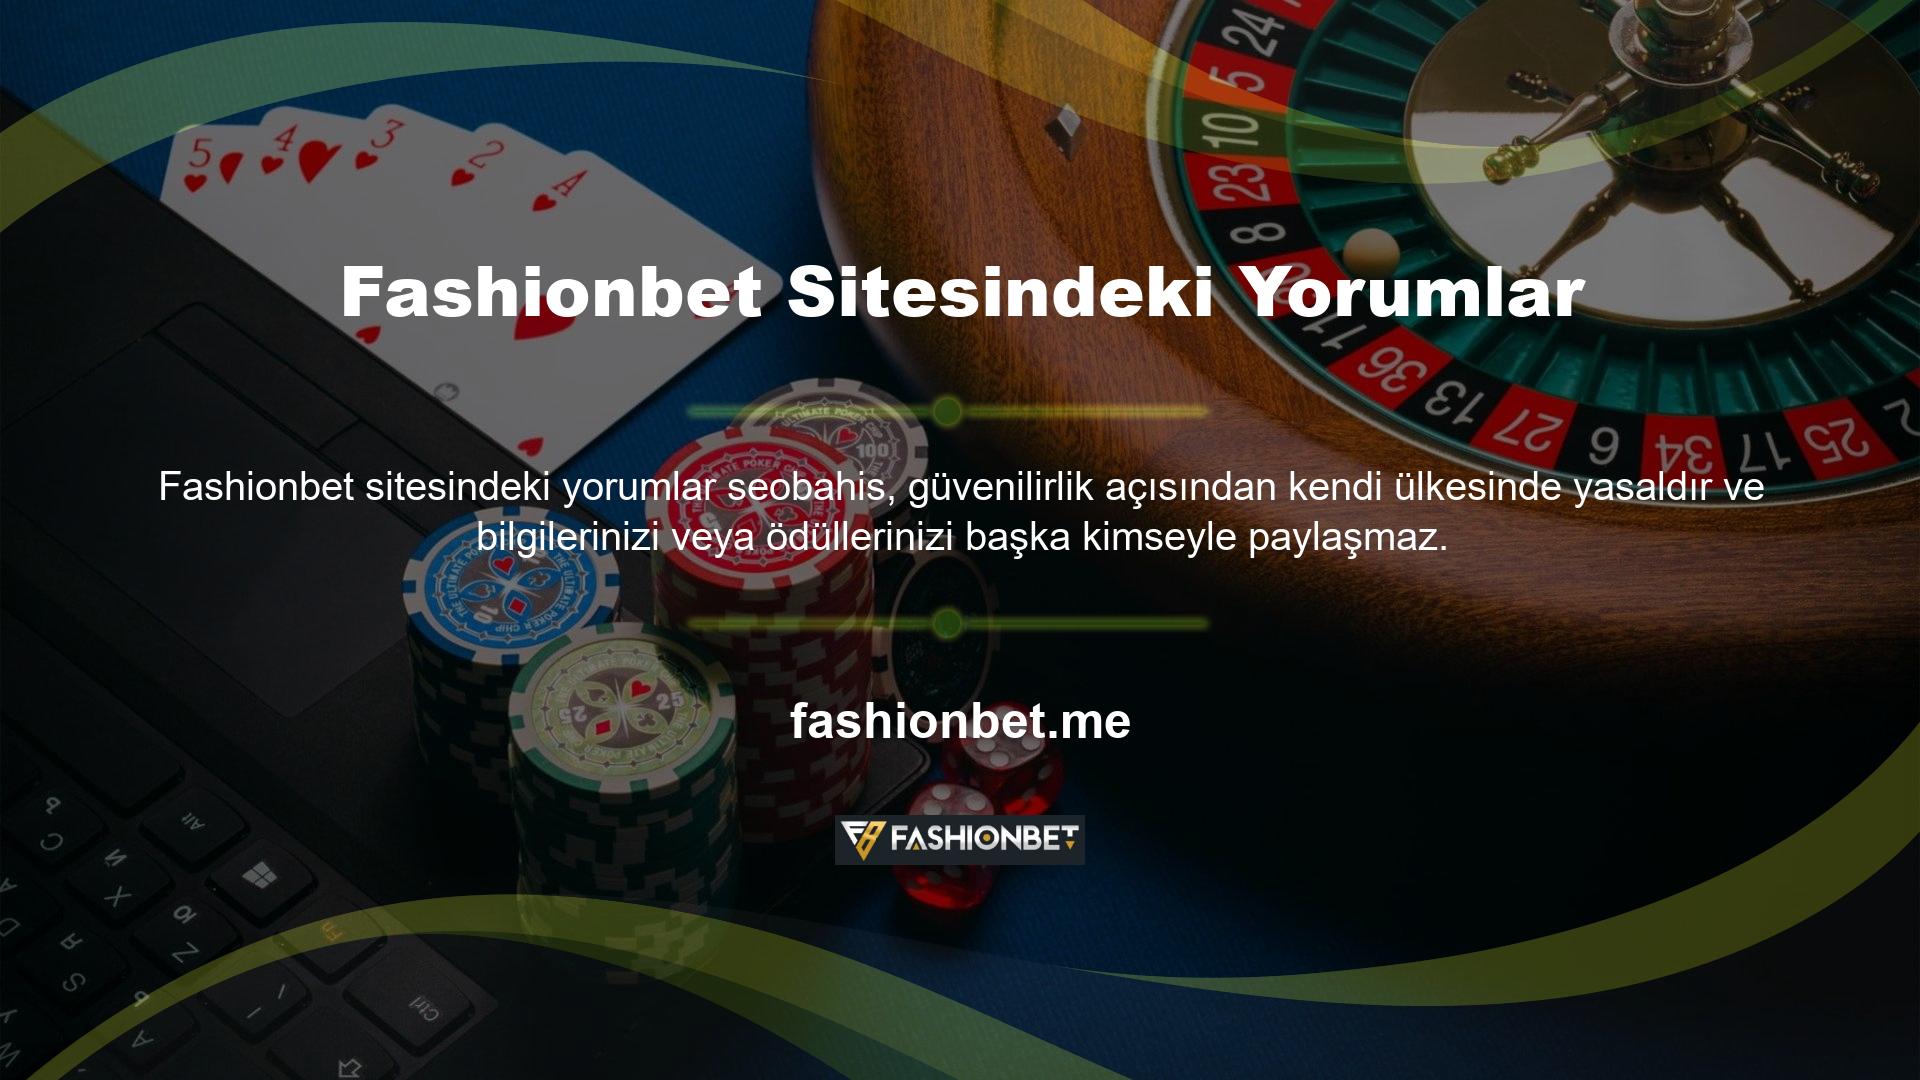 Fashionbet teknolojik değişimlere başarıyla uyum sağlamış ve Avrupa pazarındaki casino şirketleri kategorisinde lider konumdadır